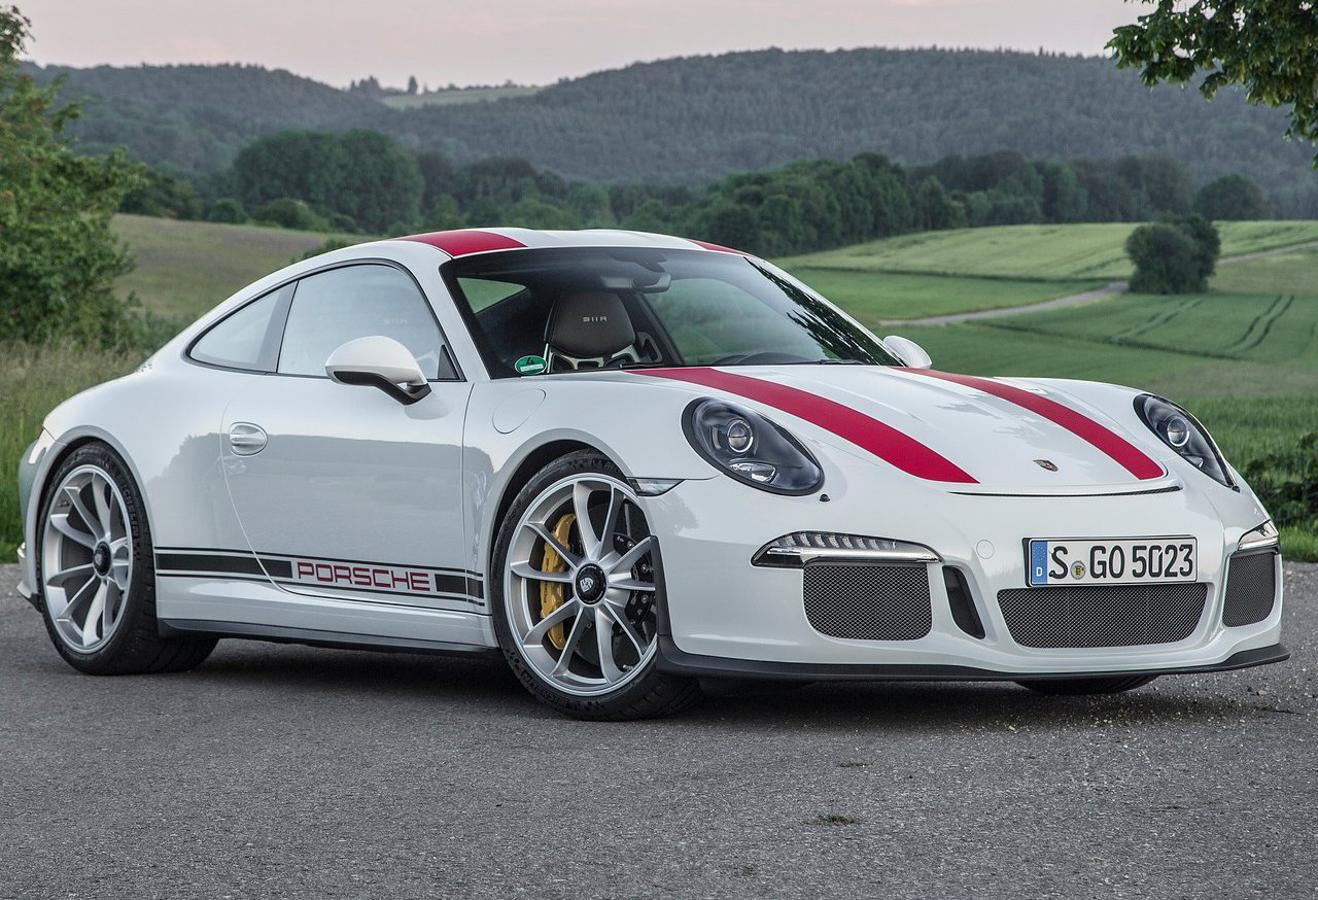 Porsche 911. Actualmente sigue siendo uno de los deportivos a batir y recientemente en el<a href="https://www.abc.es/summum/motor/abci-coches-mas-exclusivos-salon-automovil-ginebra-2018-201803141739_noticia.html" target="_blank"> Salón del Automóvil de Ginebra</a> se presentó la última versión GT3, una bestia de 520 CV lista para salir al circuito. Esta versión parte de un precio de 224.171 euros